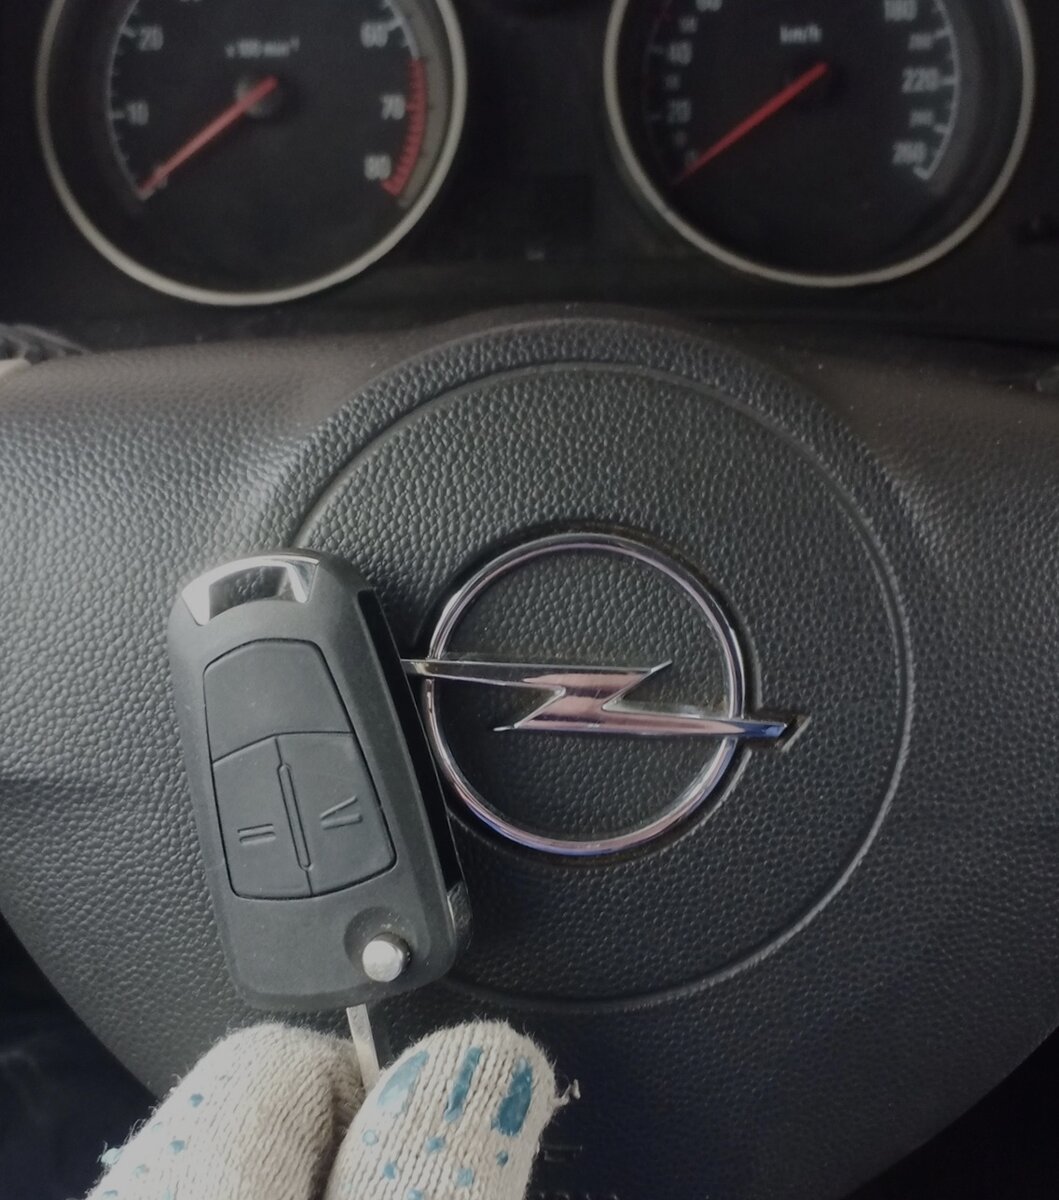  — Opel Astra H 2007🚘🚗 Восстановили ключ для Опель Астра Н, на выезде, за 1 день 🔥 Выехали в Кудымкар, открыли авто, восстановили нарезку ключа, запрограммировали чип и кнопки центрального замка...